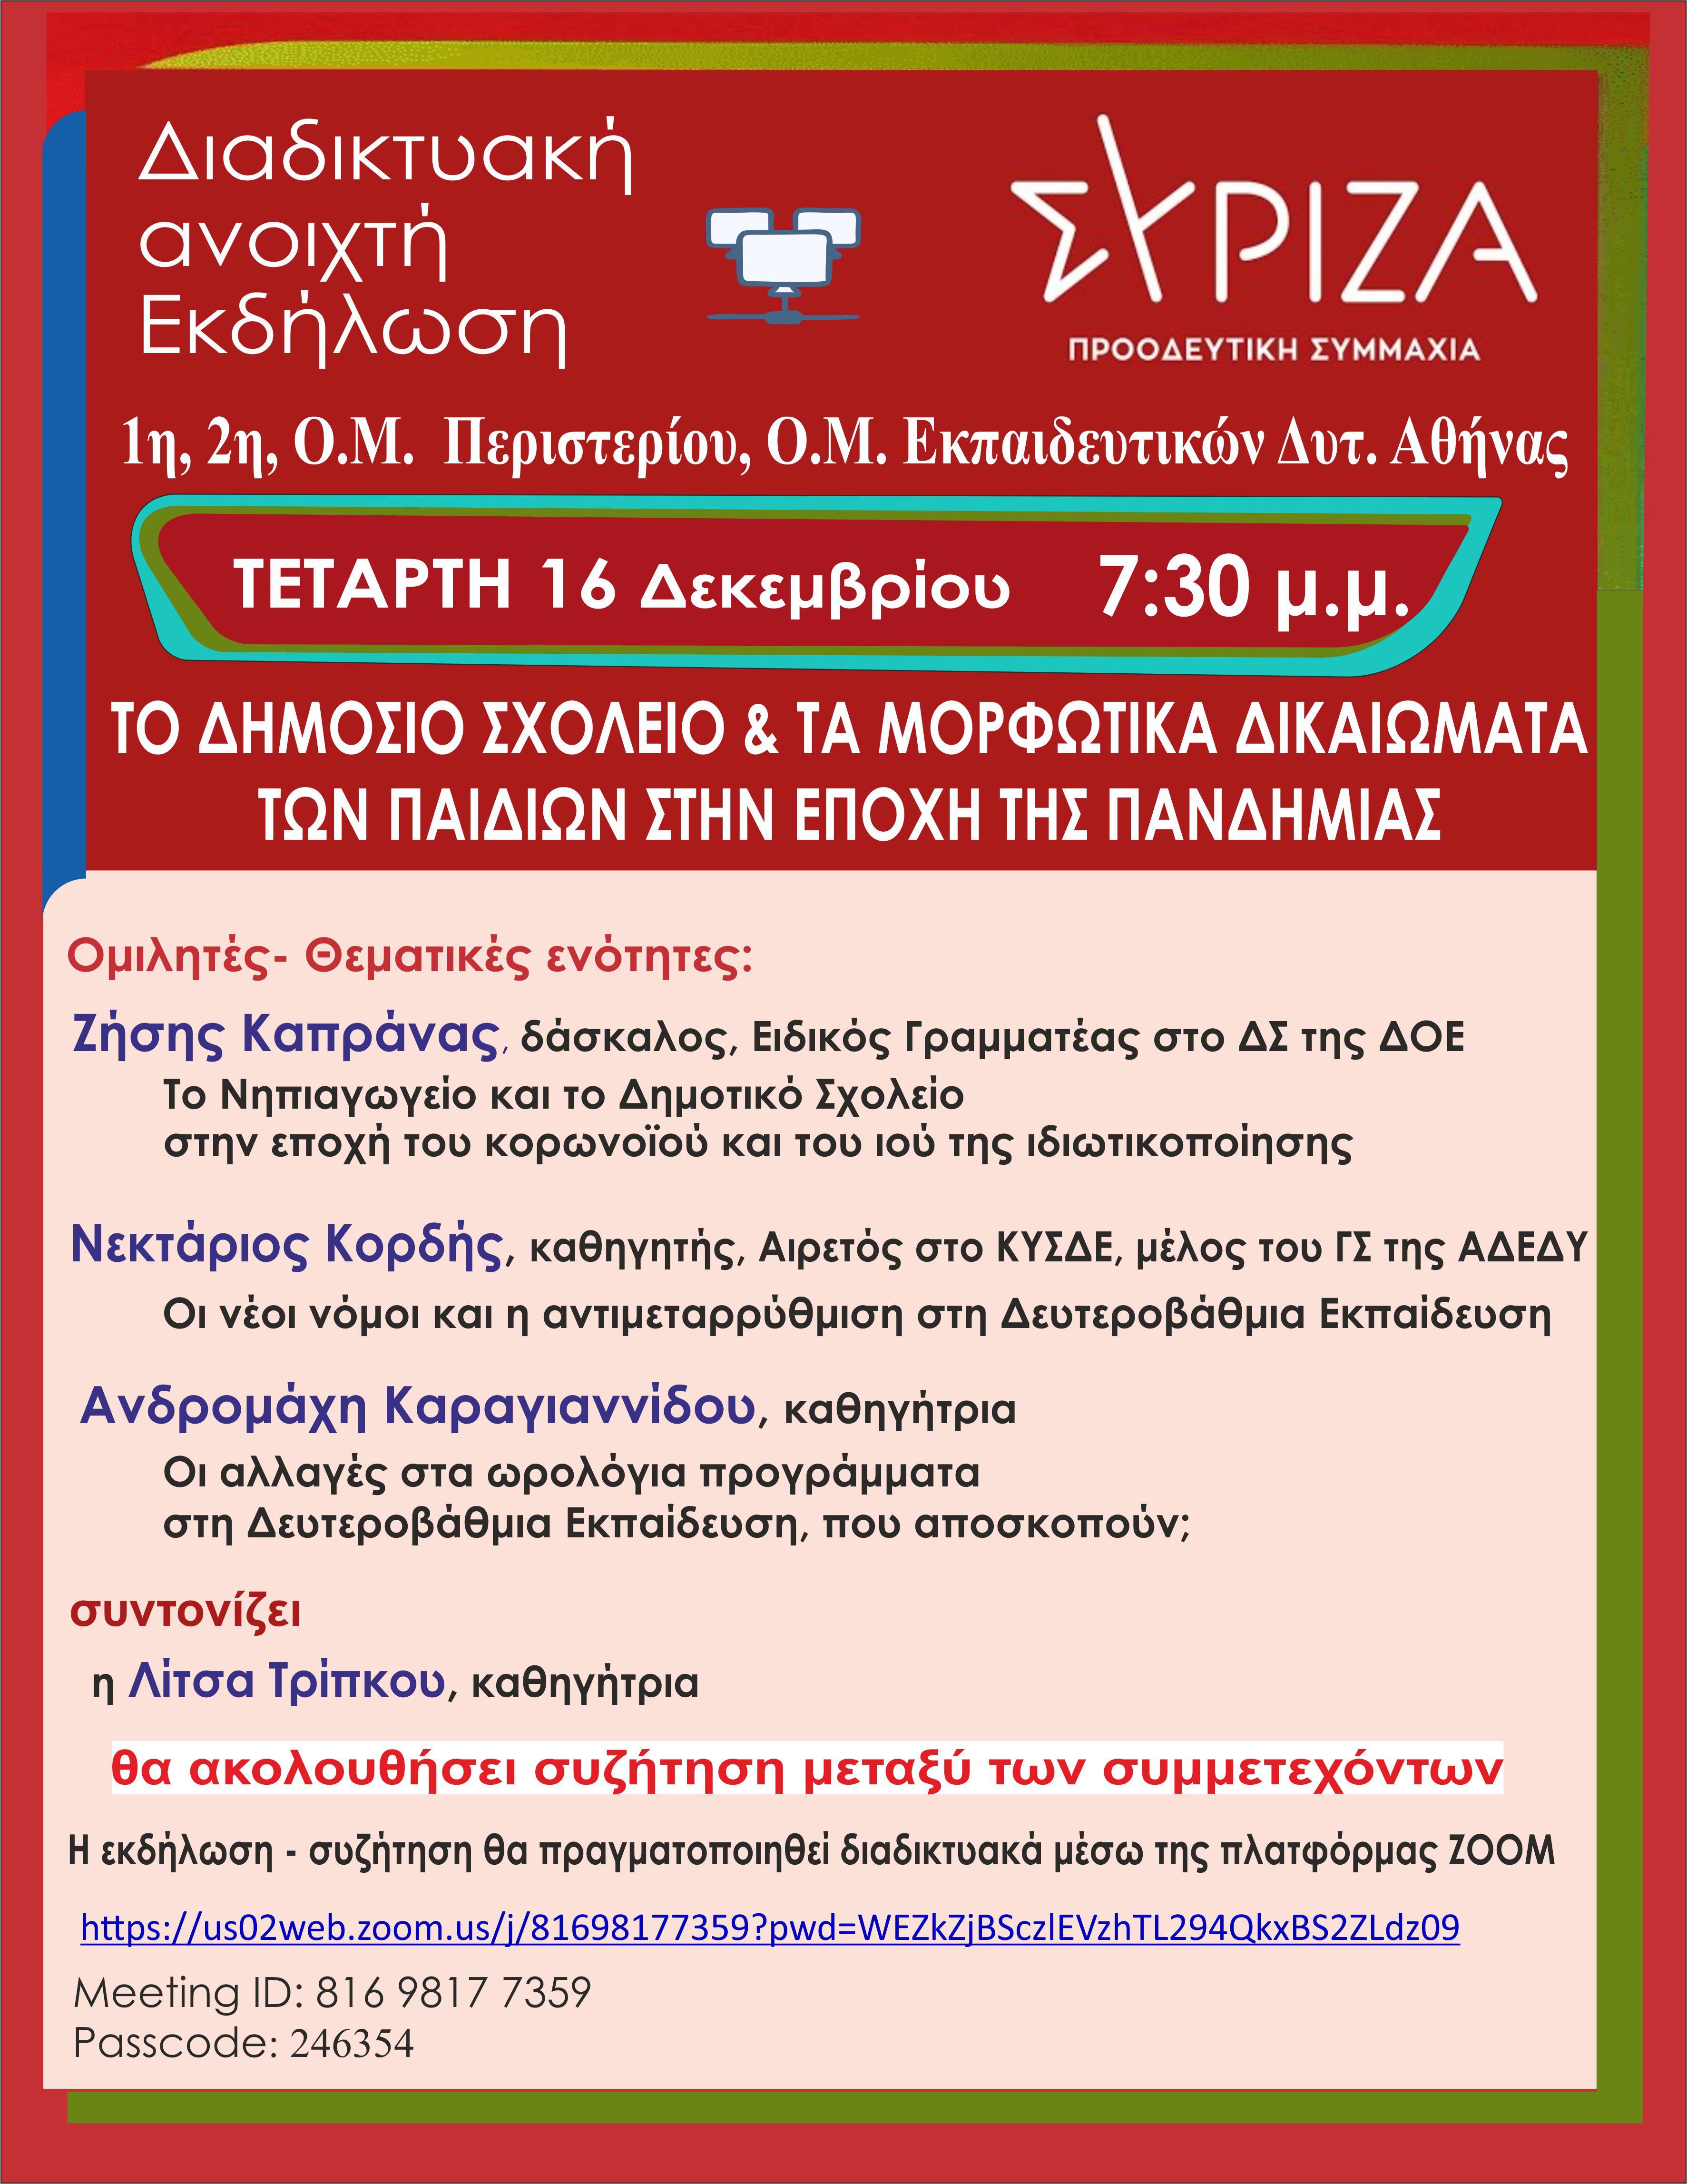 ΣΥΡΙΖΑ Π.Σ.: Ανοιχτή εκδήλωση την Τετάρτη 16 Δεκεμβρίου 2020 στις 7.30 μμ 